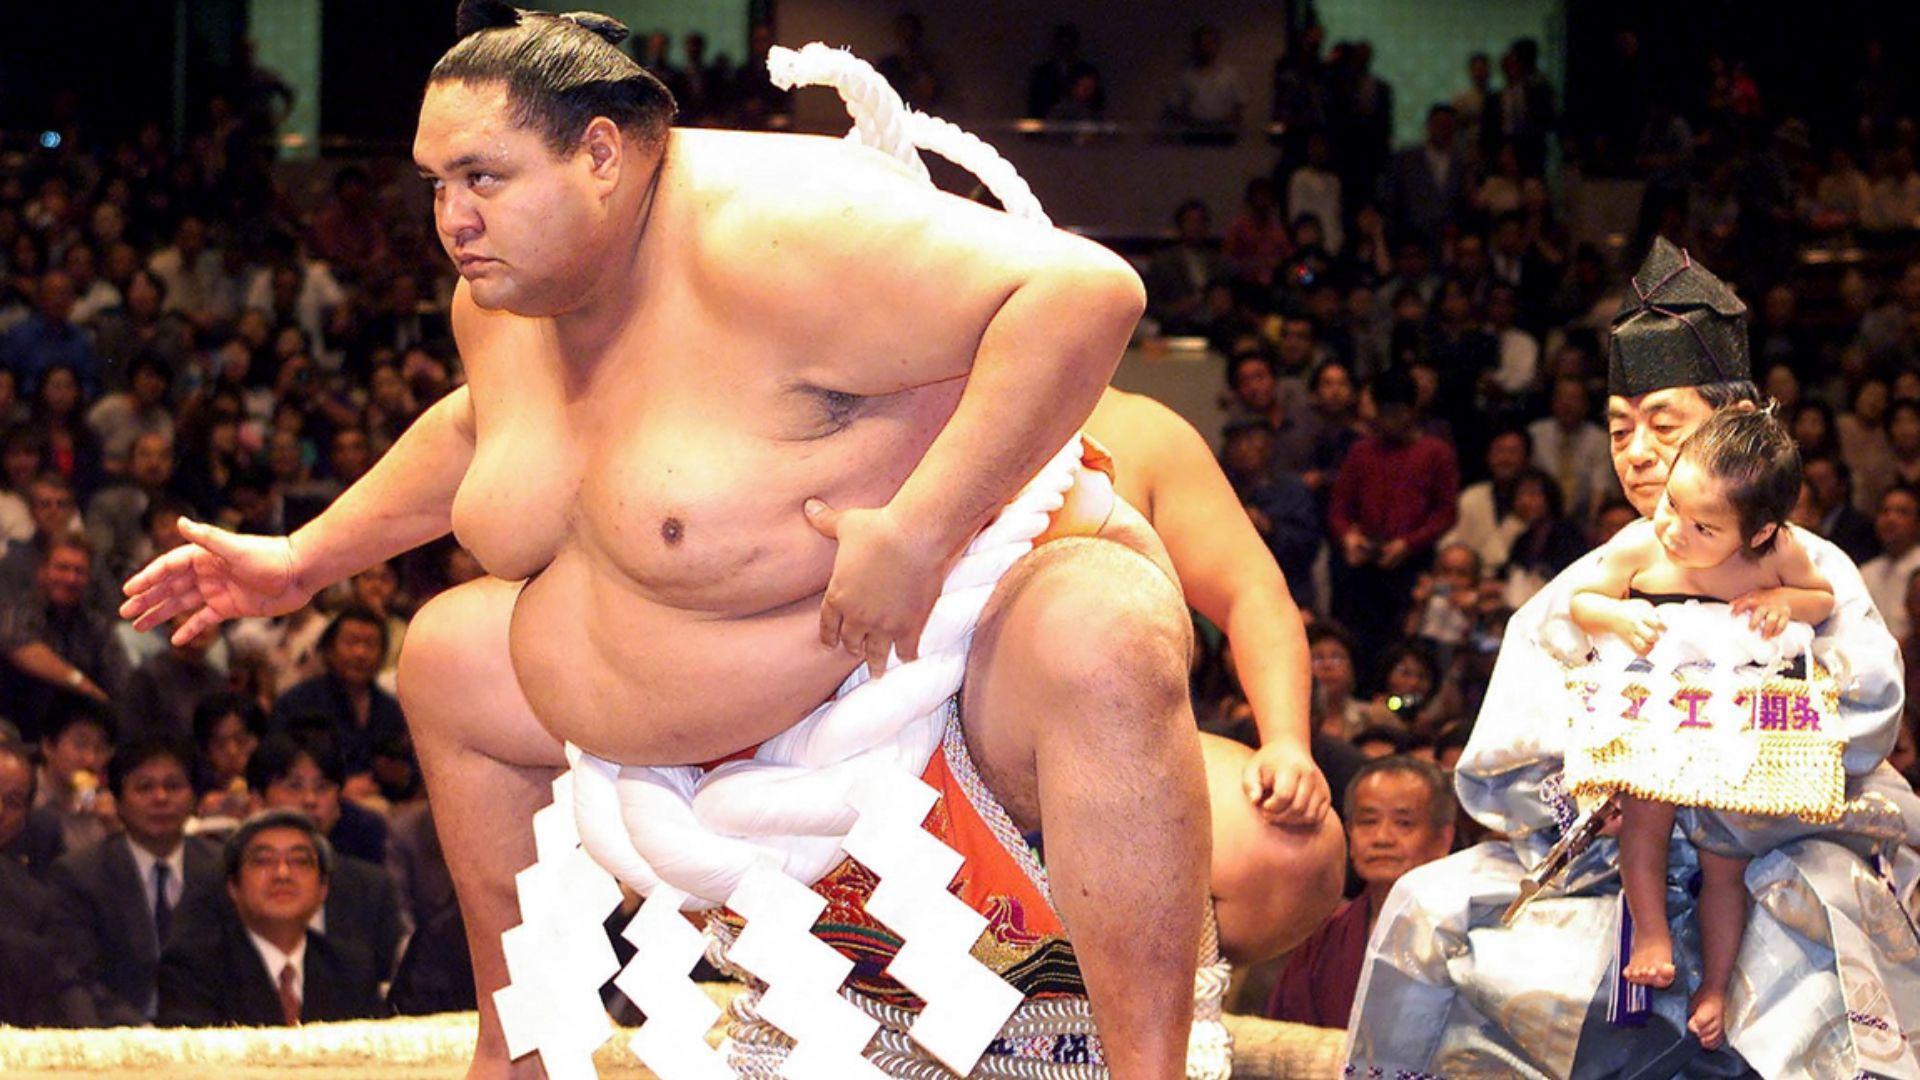 A murit Akebono, primul mare campion de sumo venit din afara Japoniei. Uriașul de peste 2 metri și 233 kg avea 54 de ani